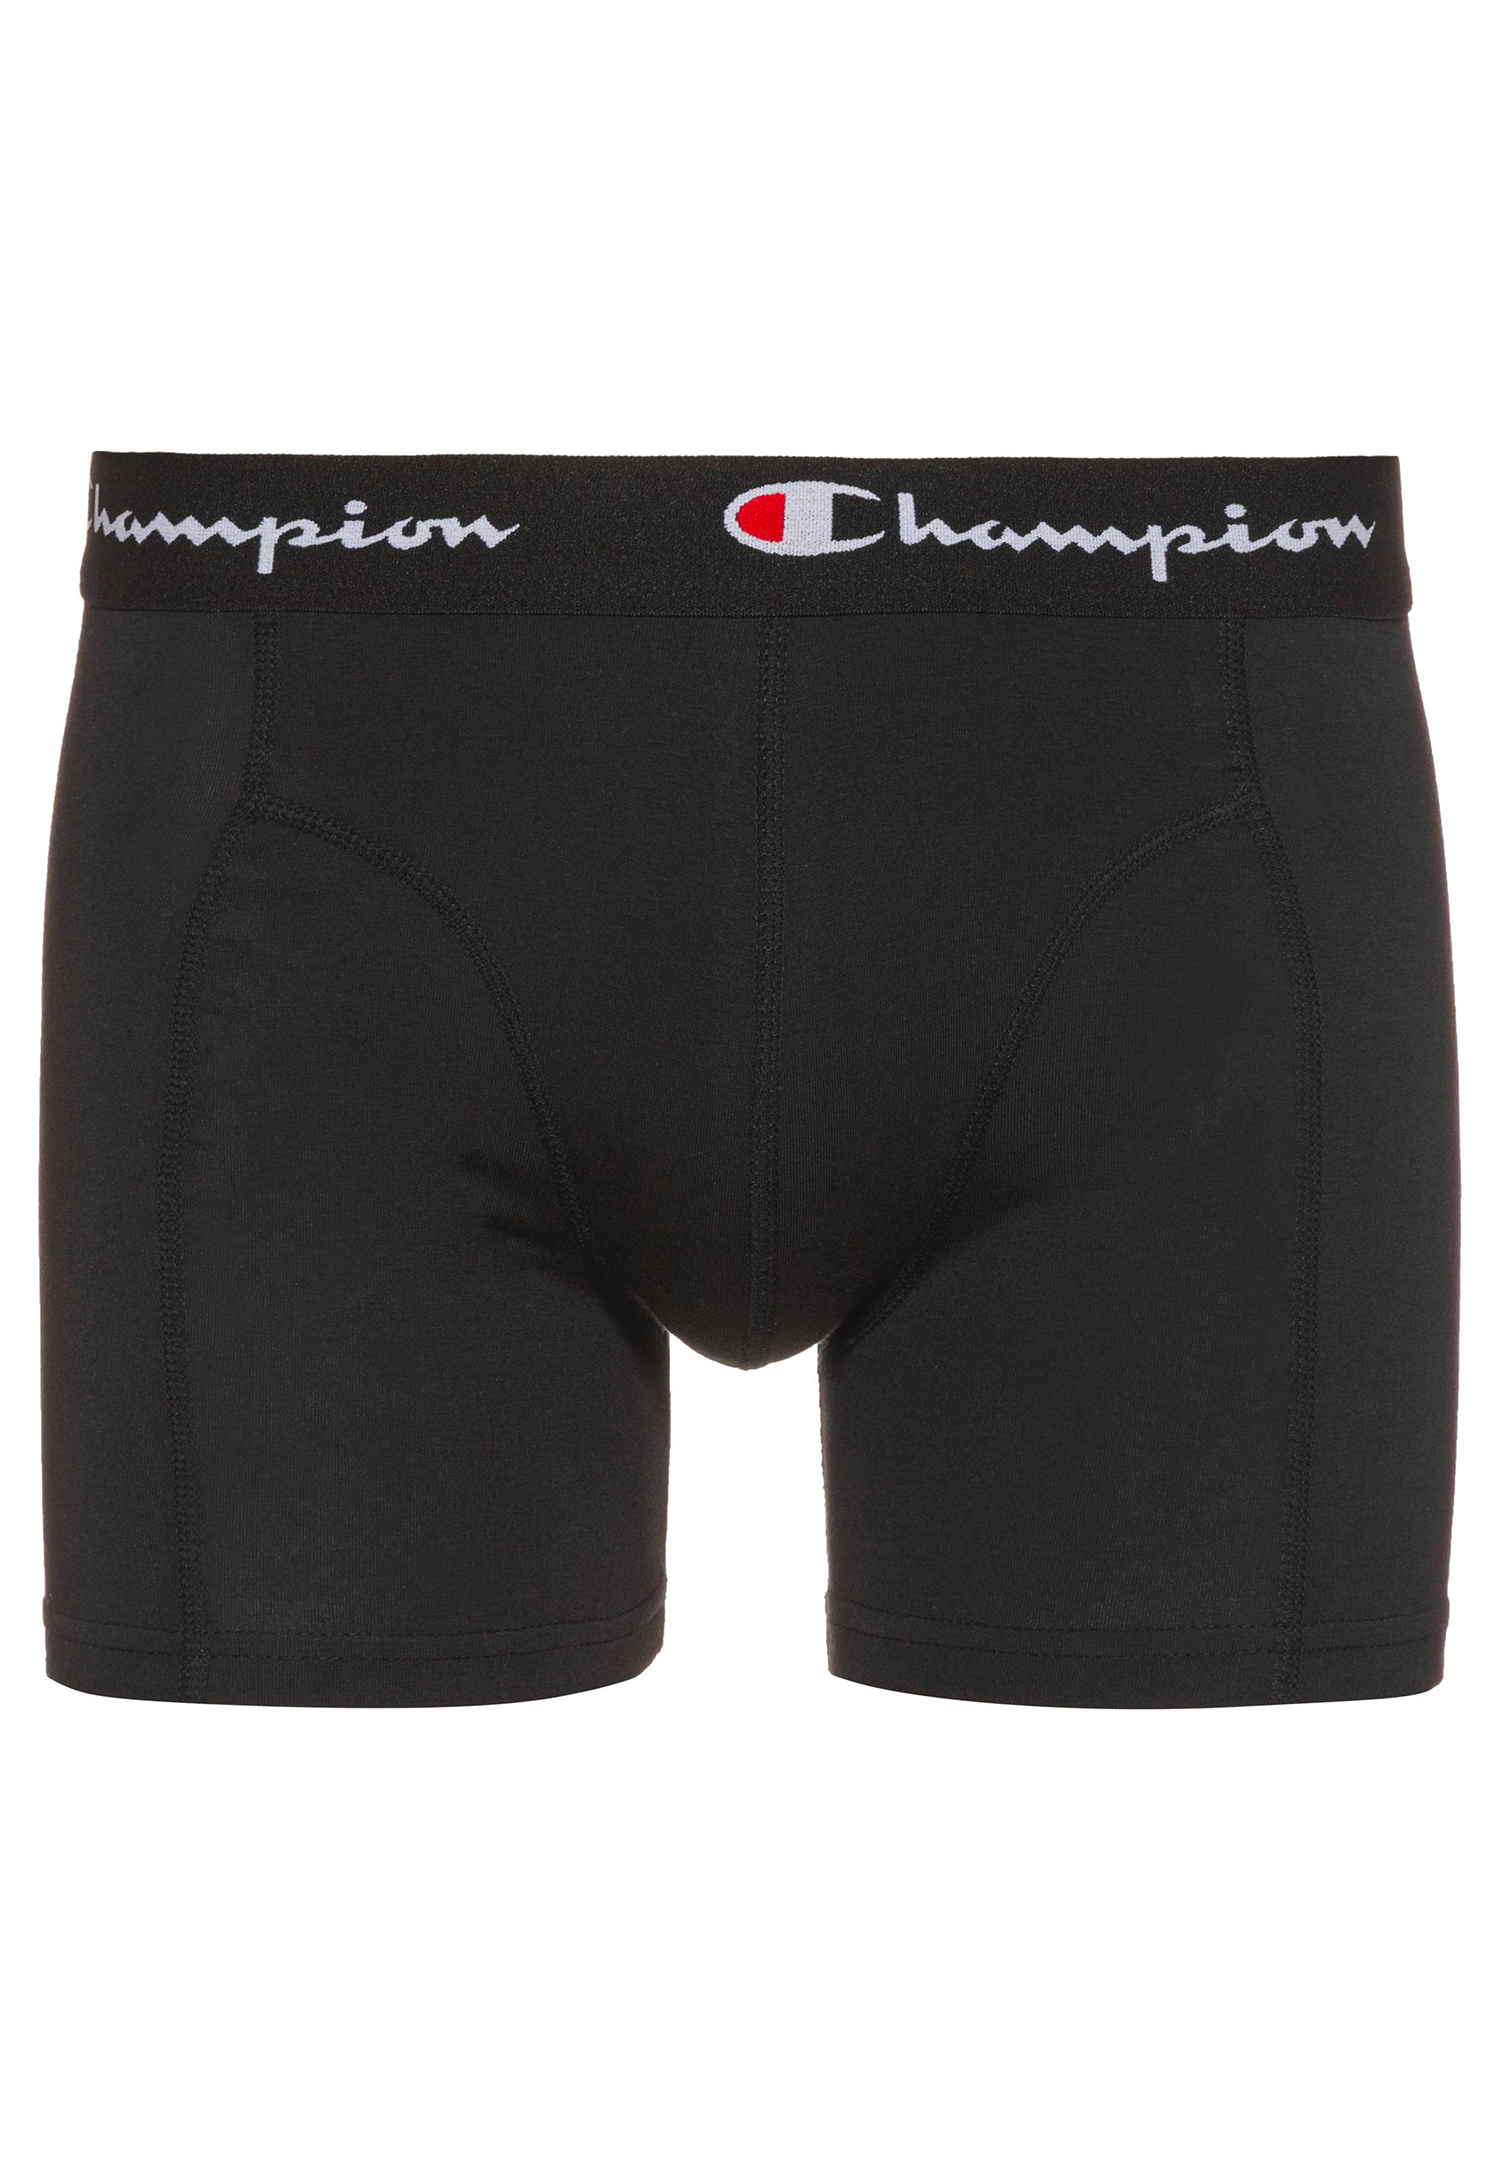 Champion Boxershorts Men Herren Unterhose Pant Boxer Unterwäsche 2er Pack